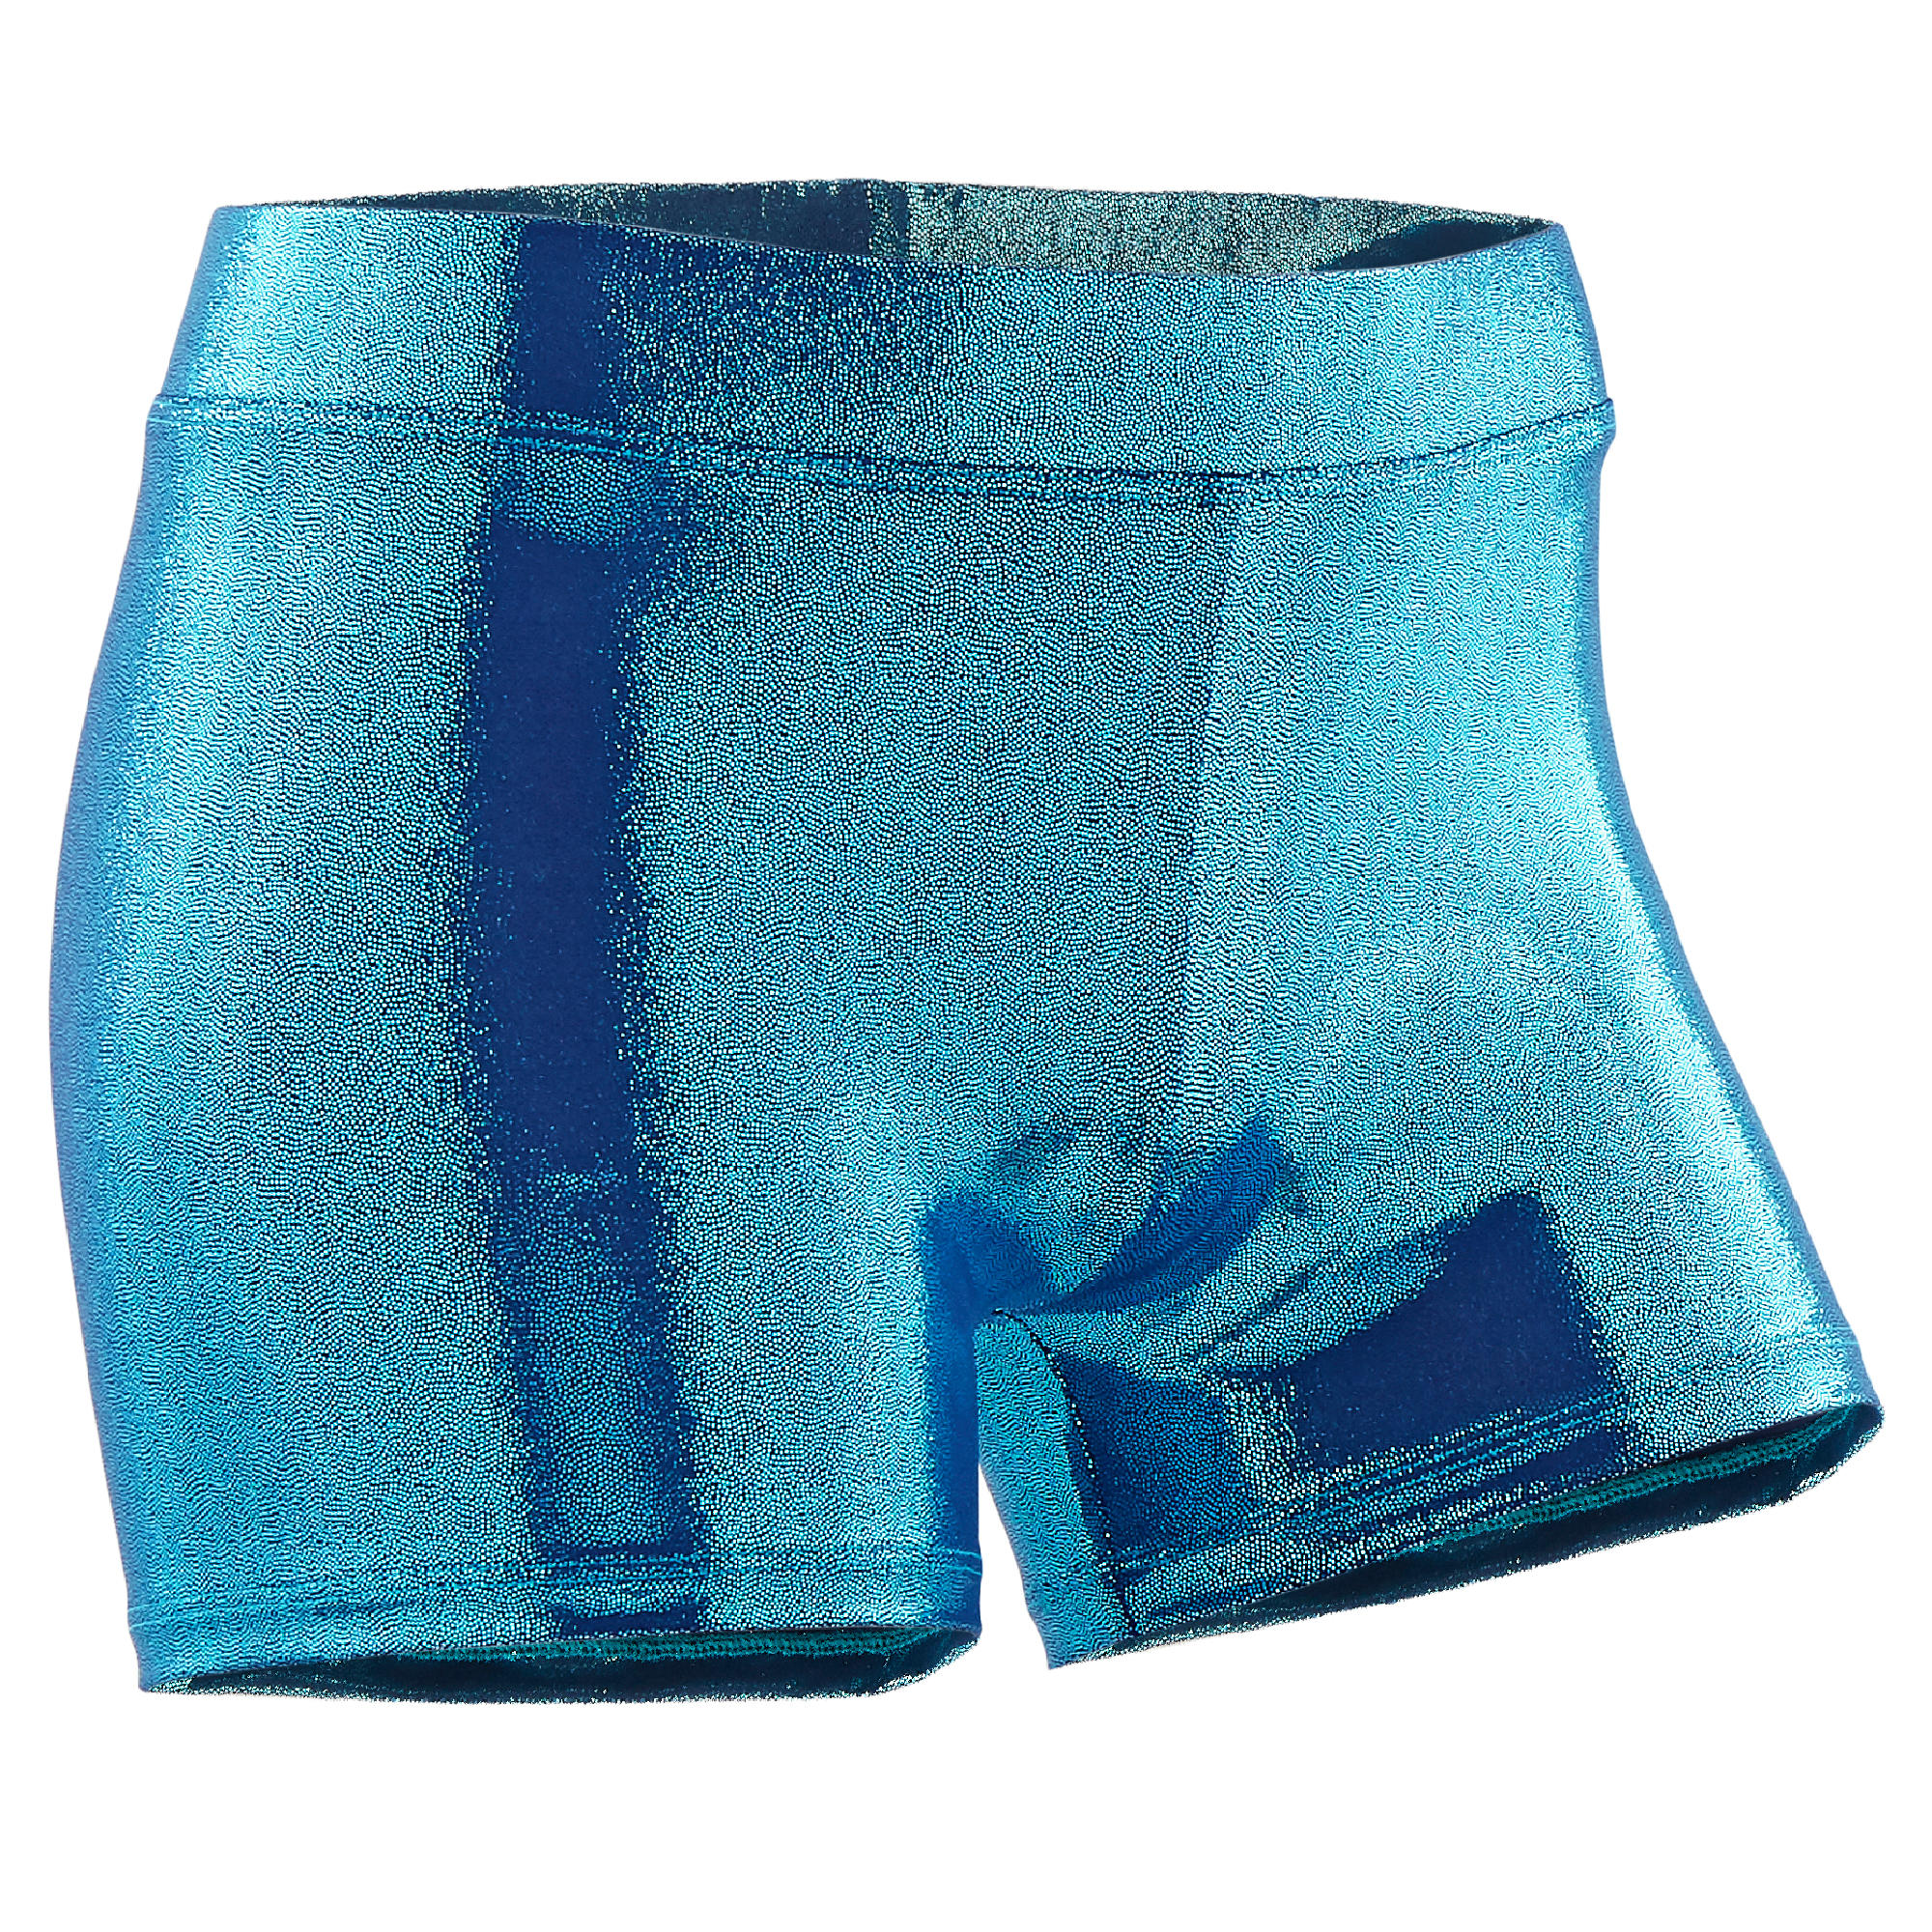 Girls' Artistic Gymnastics Shiny Shorts - Turquoise 1/4